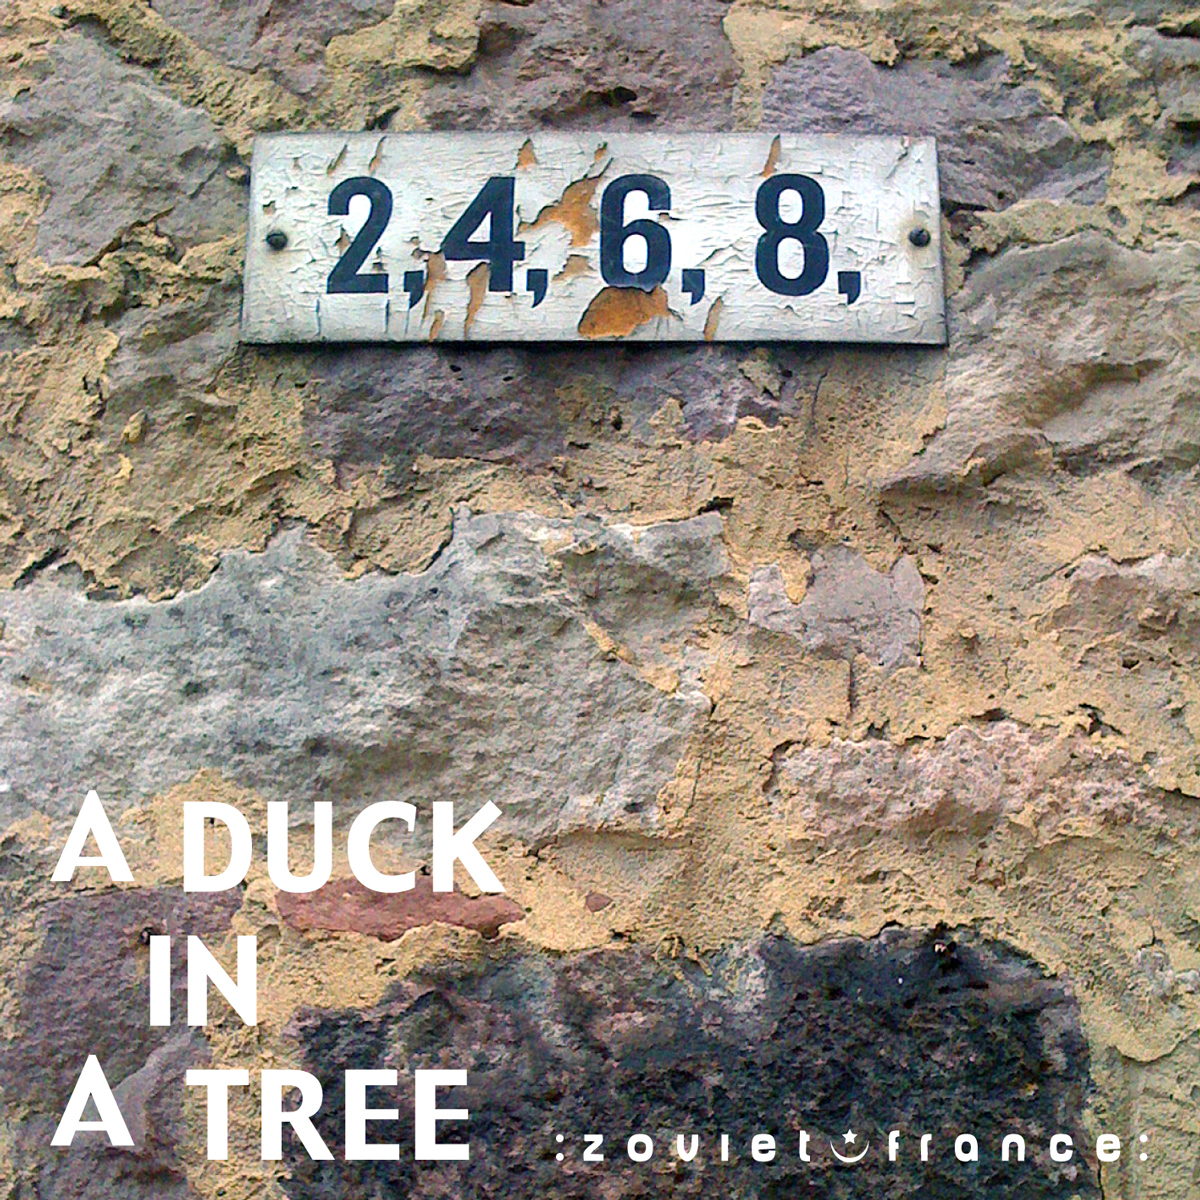 A-Duck-in-a-Tree-2012-10-13-_-Nine-layout.jpg